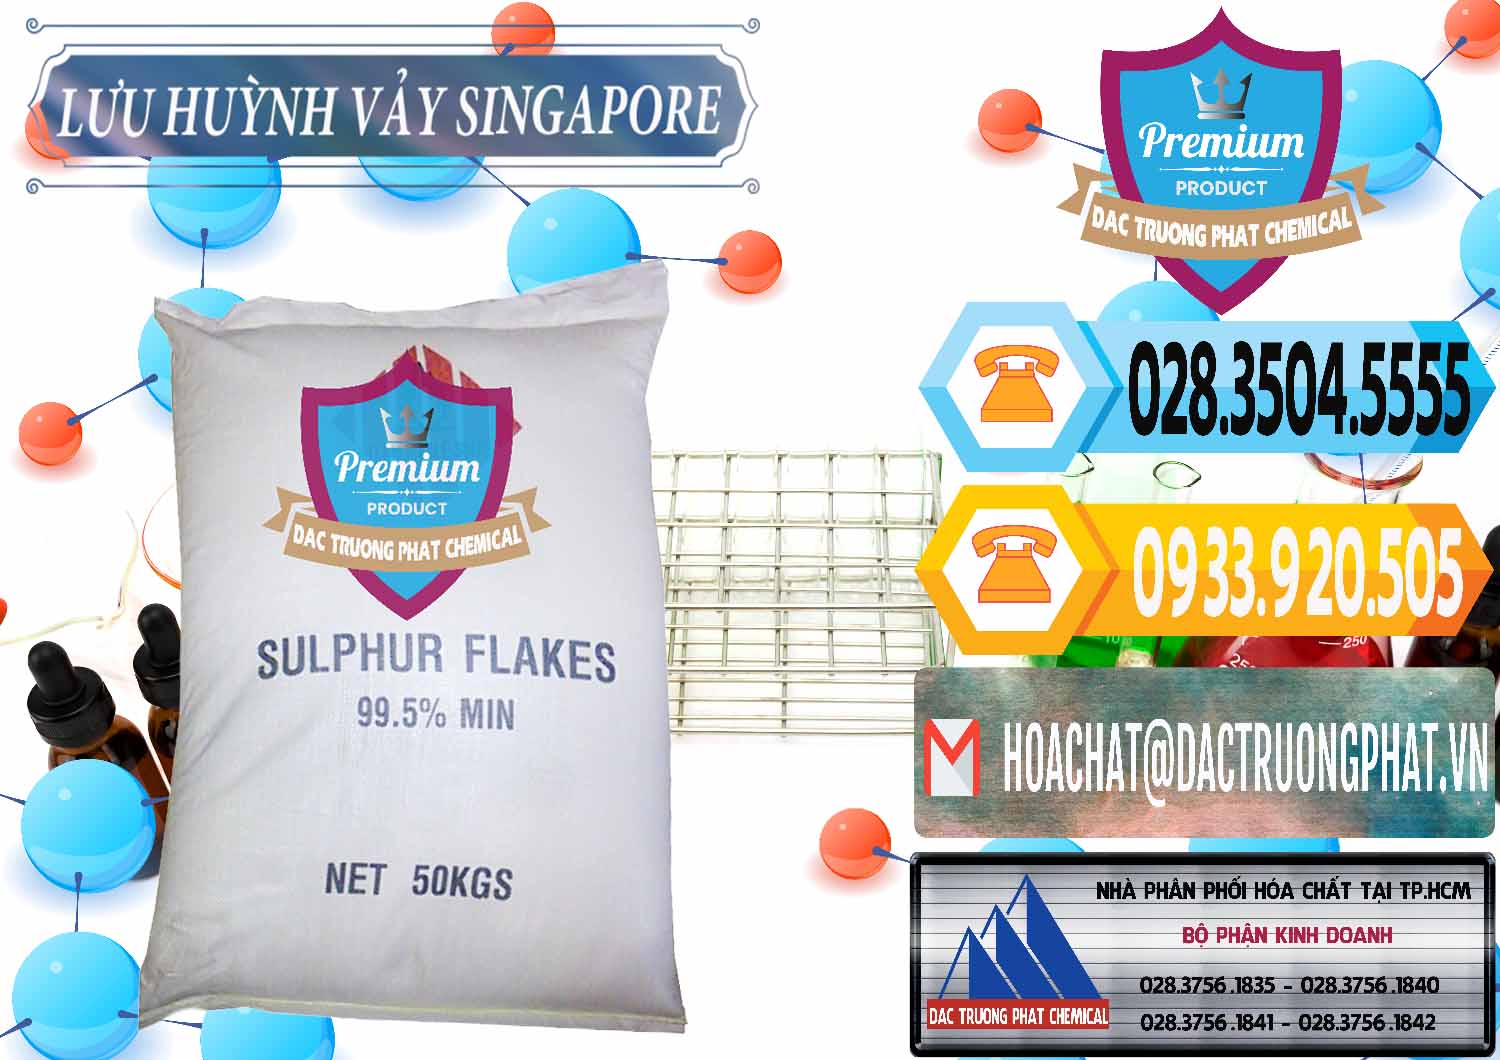 Nơi chuyên phân phối & bán Lưu huỳnh Vảy - Sulfur Flakes Singapore - 0346 - Chuyên phân phối và cung cấp hóa chất tại TP.HCM - hoachattayrua.net